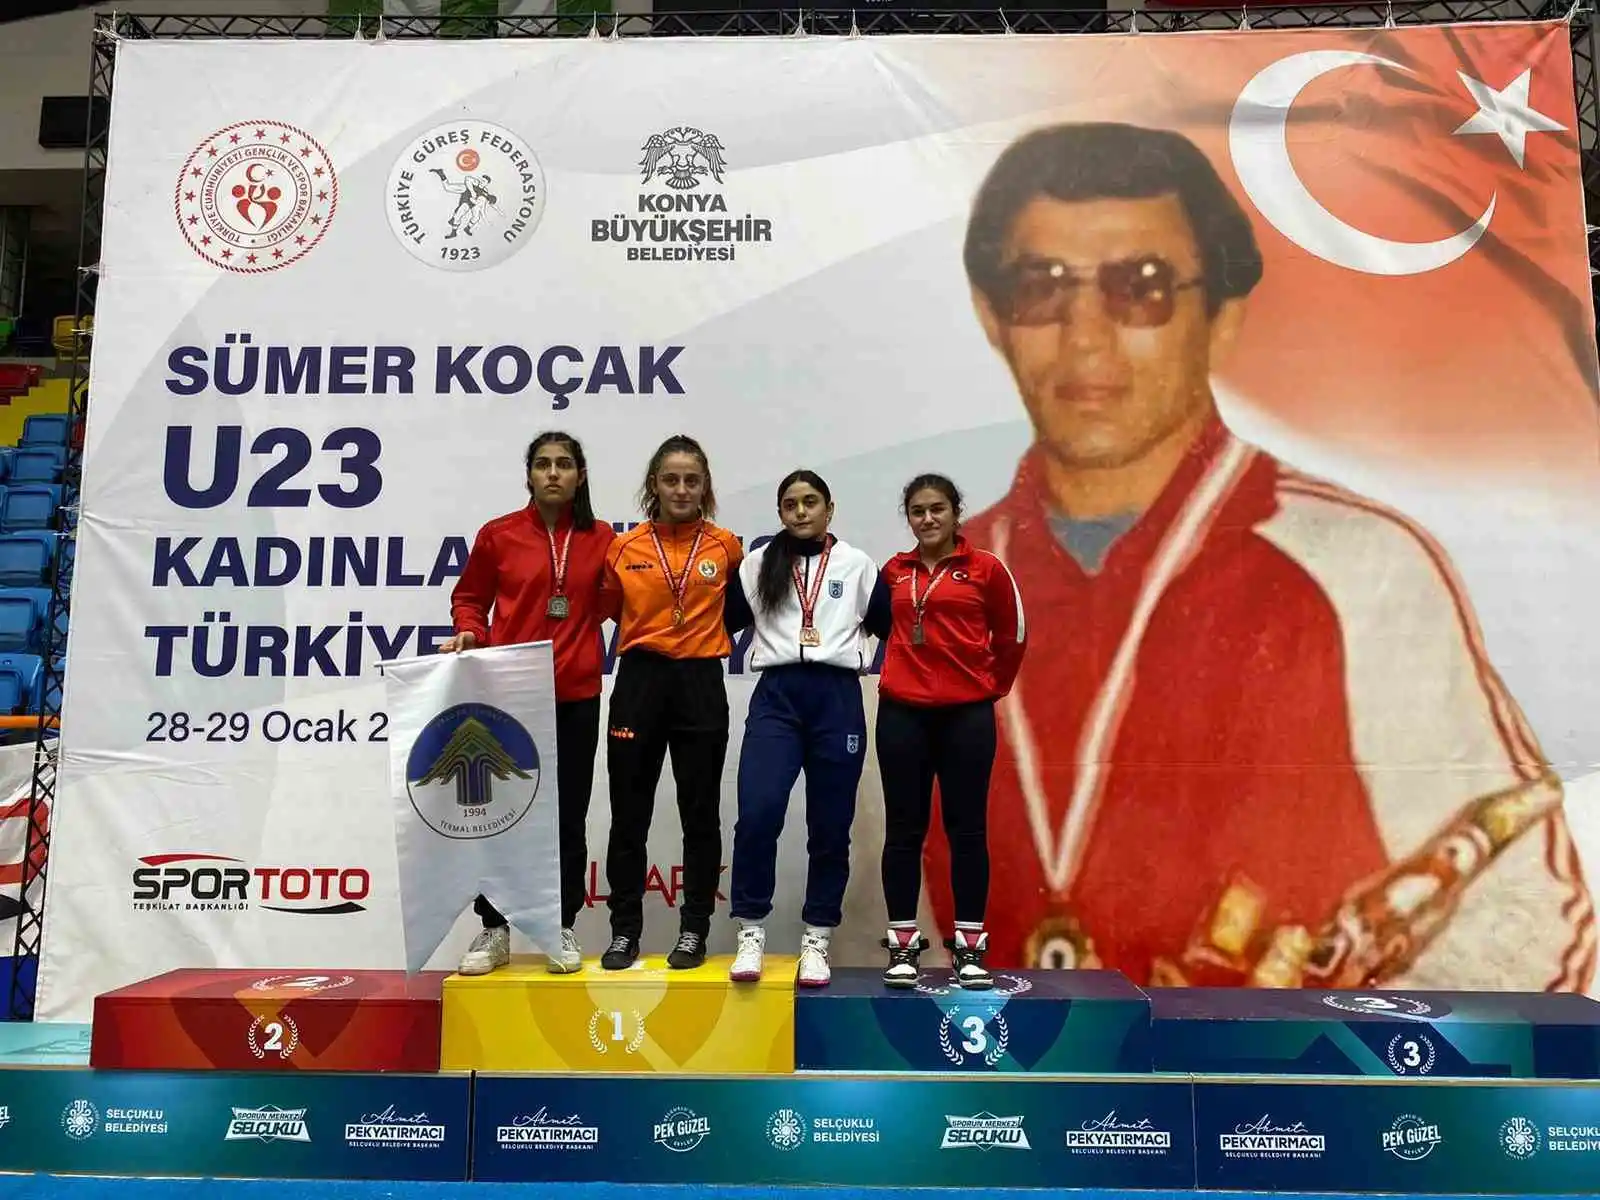 Köyceğizli İlyasoğlu 62 kgda Türkiye şampiyonu oldu
